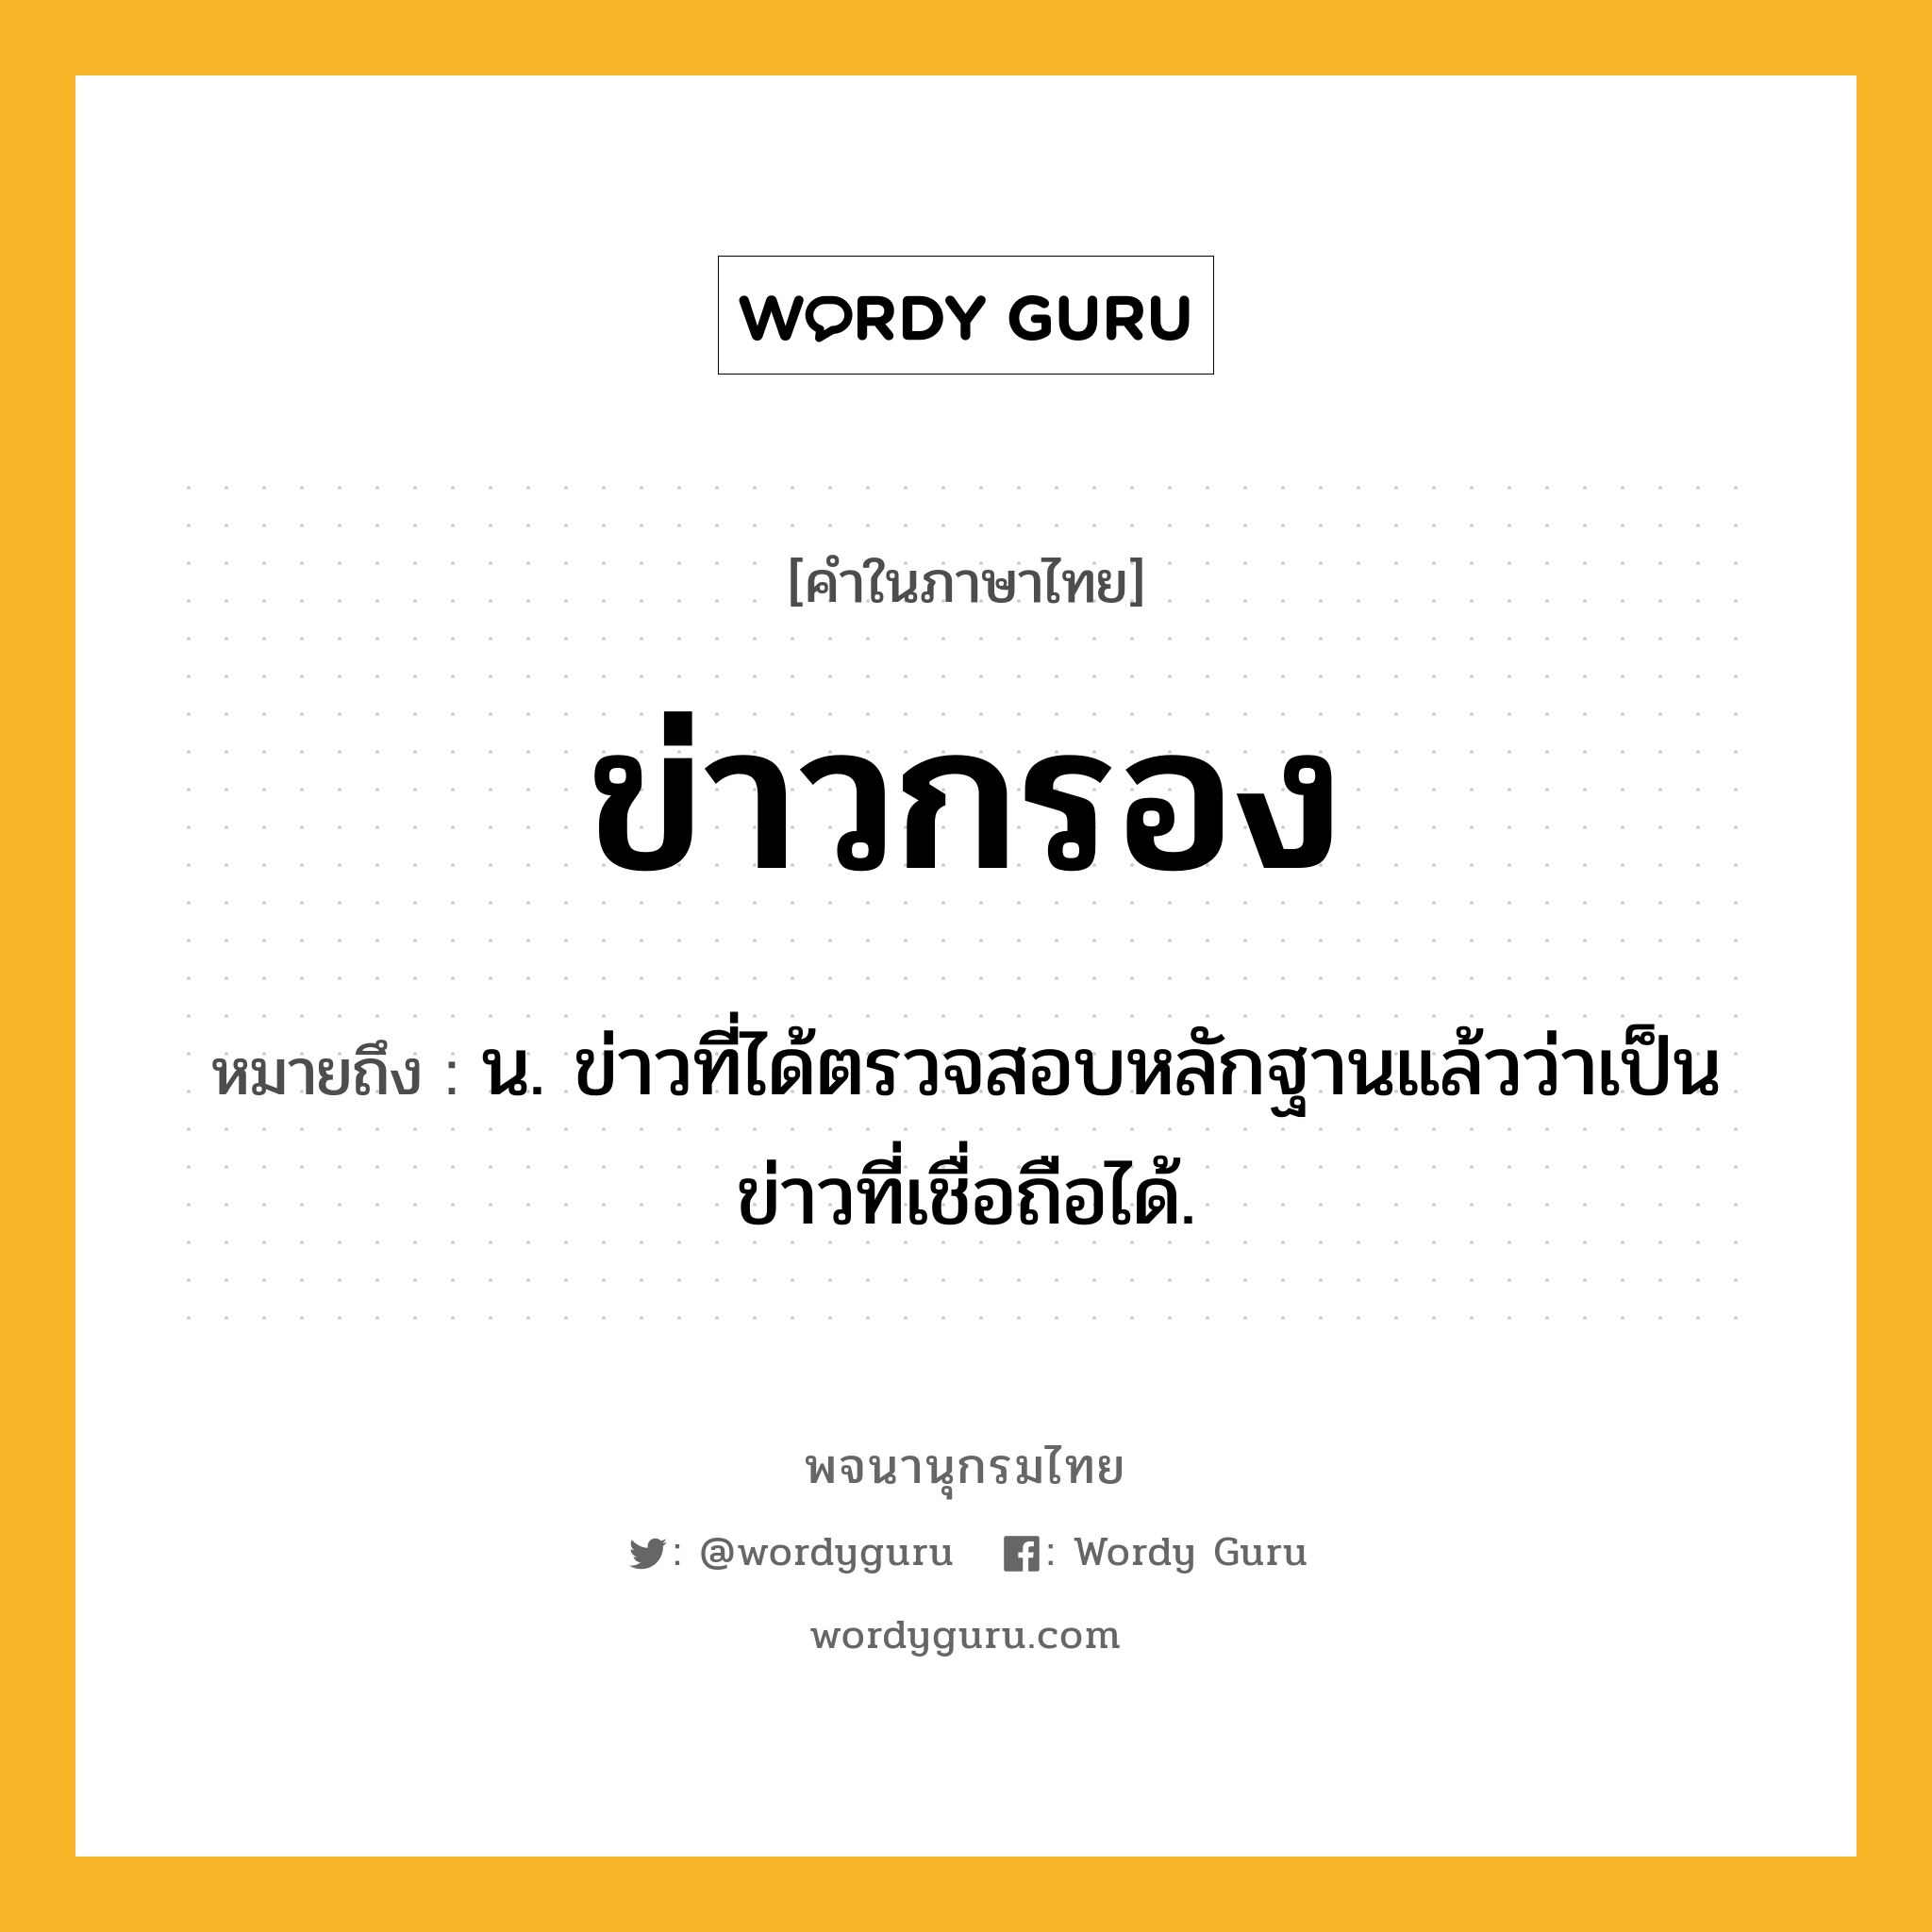 ข่าวกรอง หมายถึงอะไร?, คำในภาษาไทย ข่าวกรอง หมายถึง น. ข่าวที่ได้ตรวจสอบหลักฐานแล้วว่าเป็นข่าวที่เชื่อถือได้.